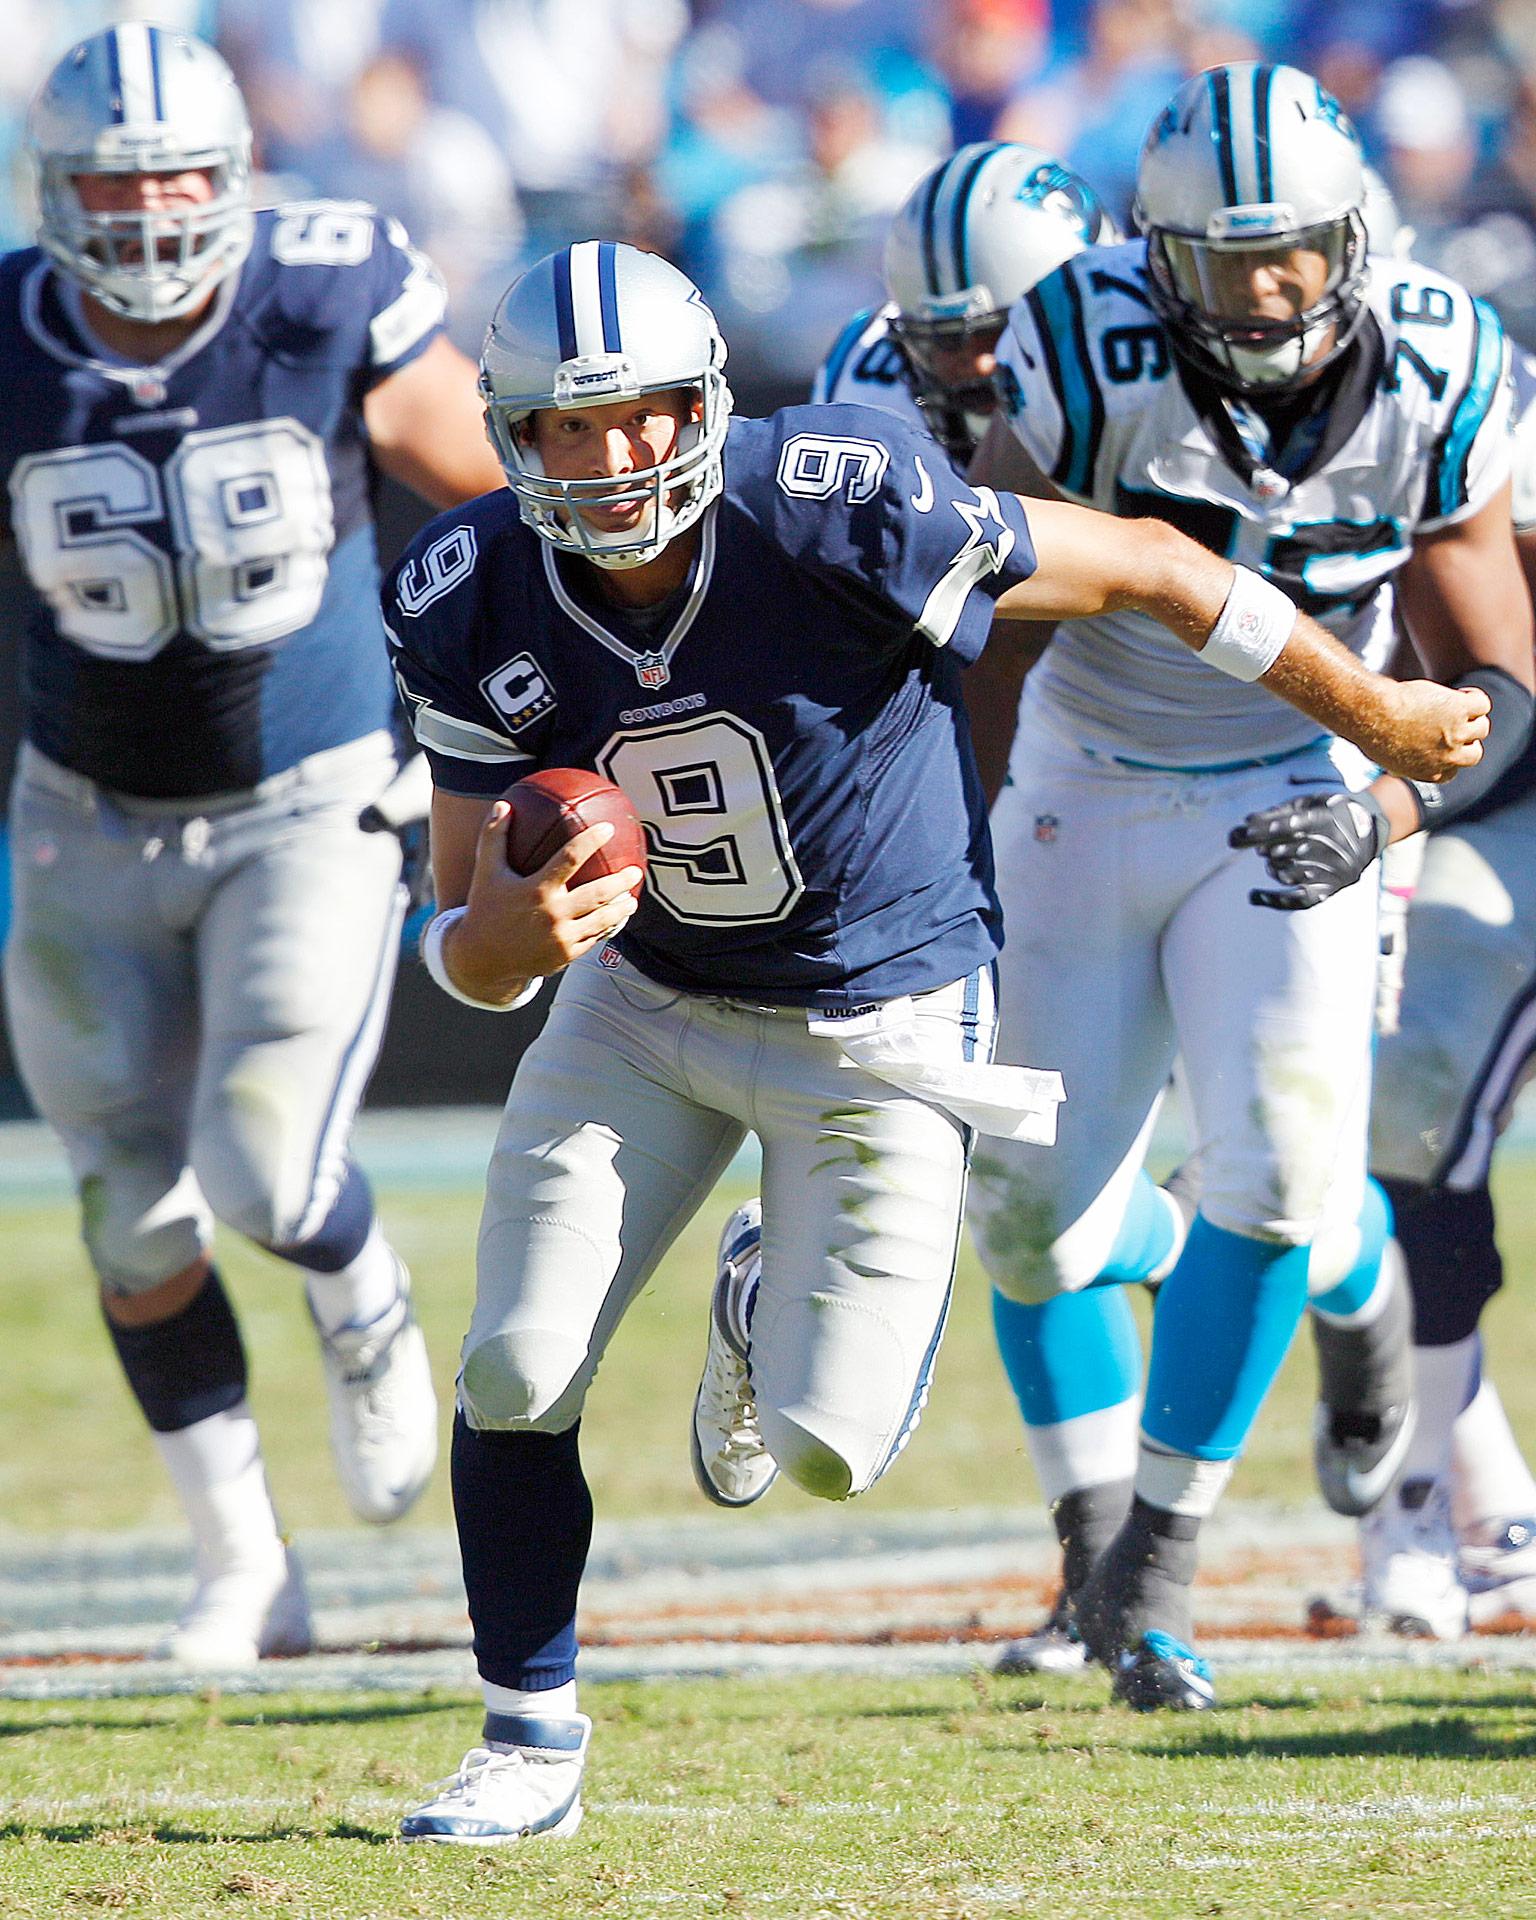 3. Tony Romo the 2012 Dallas Cowboys